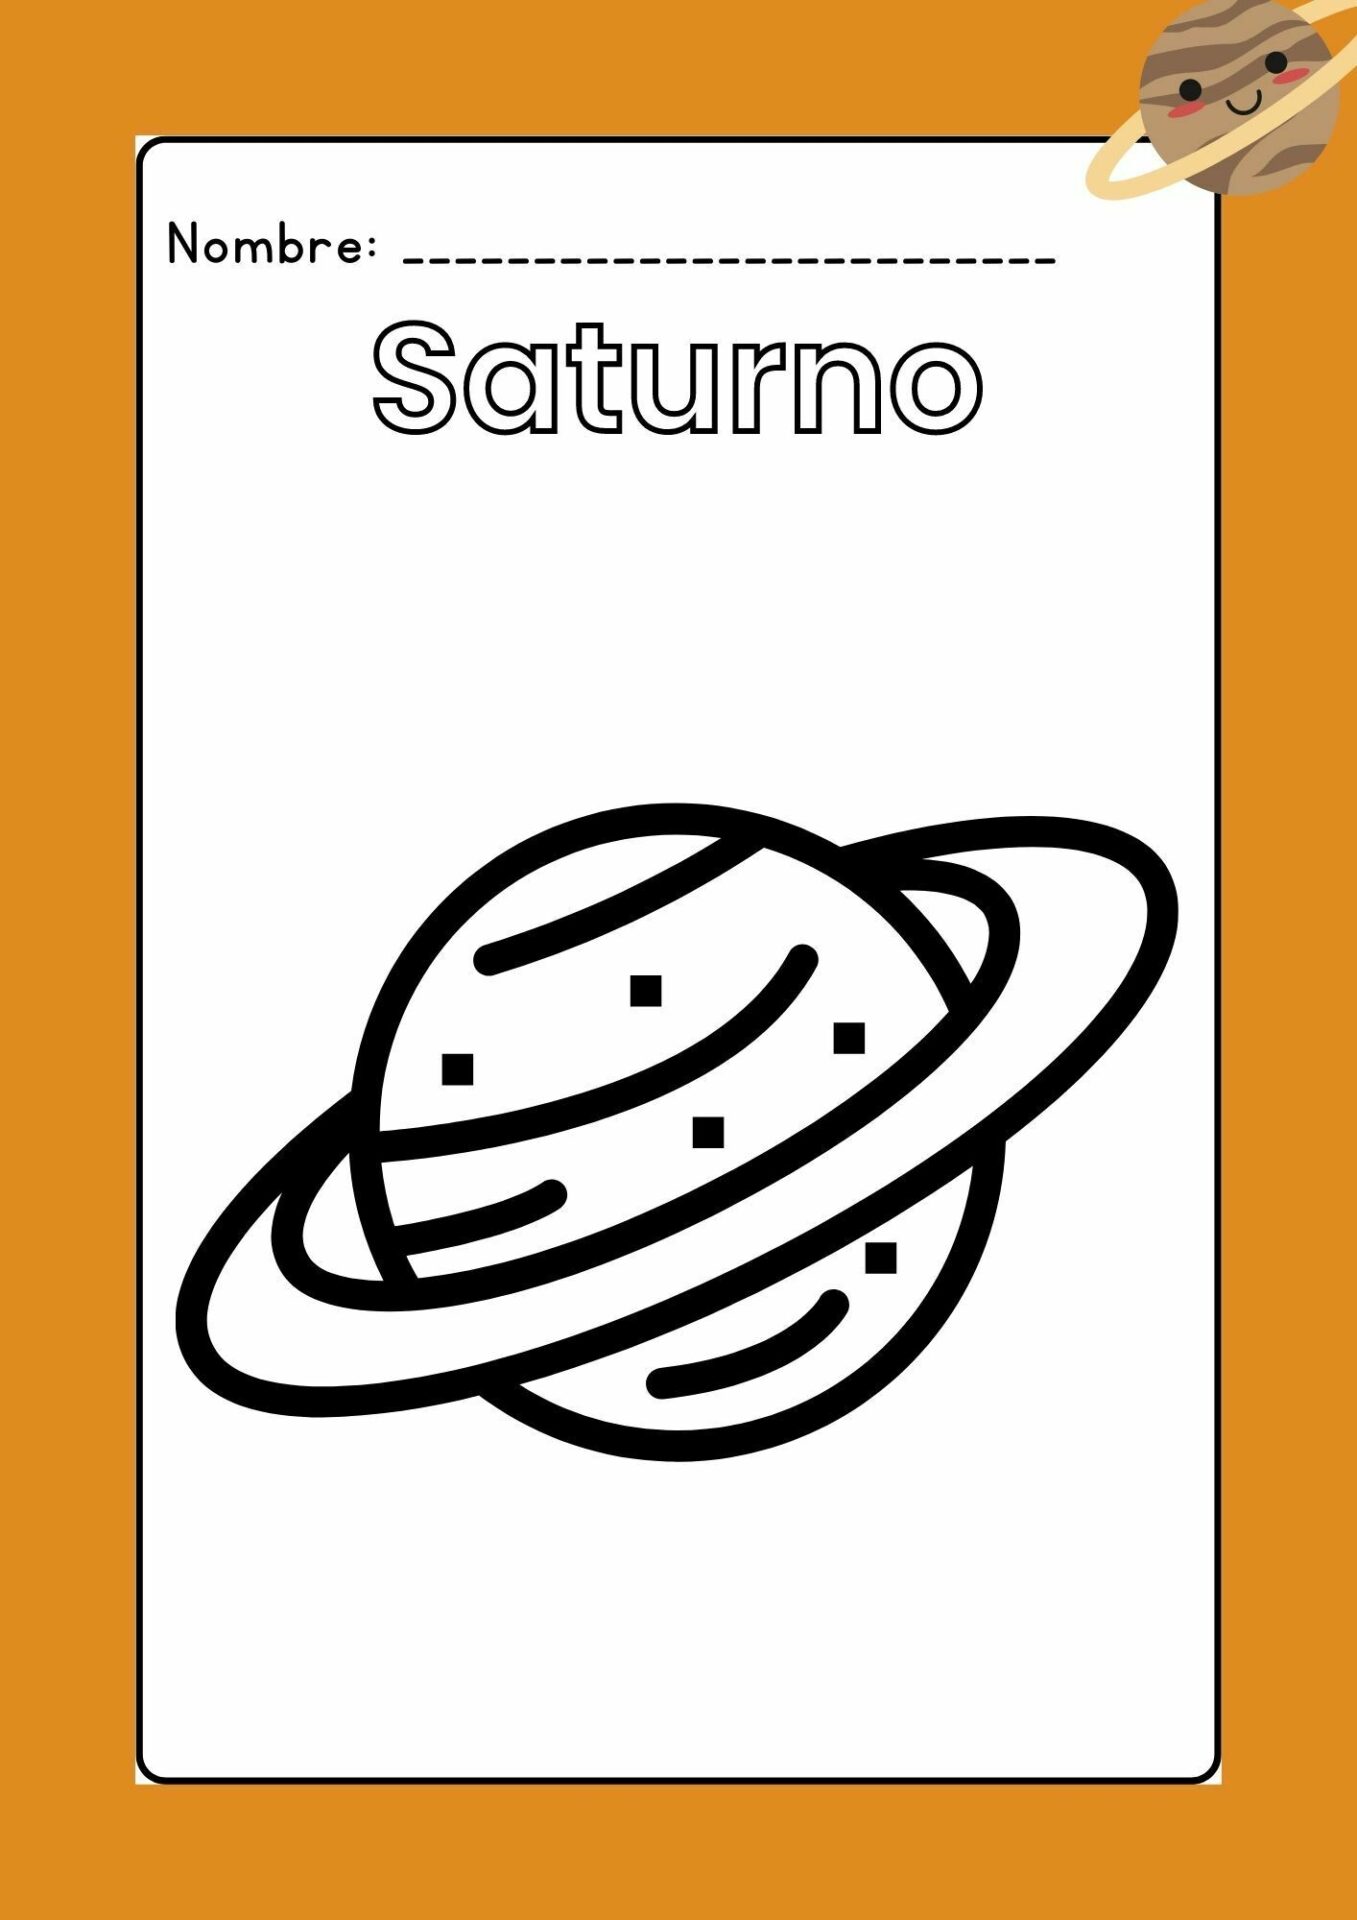 Imagen Saturno